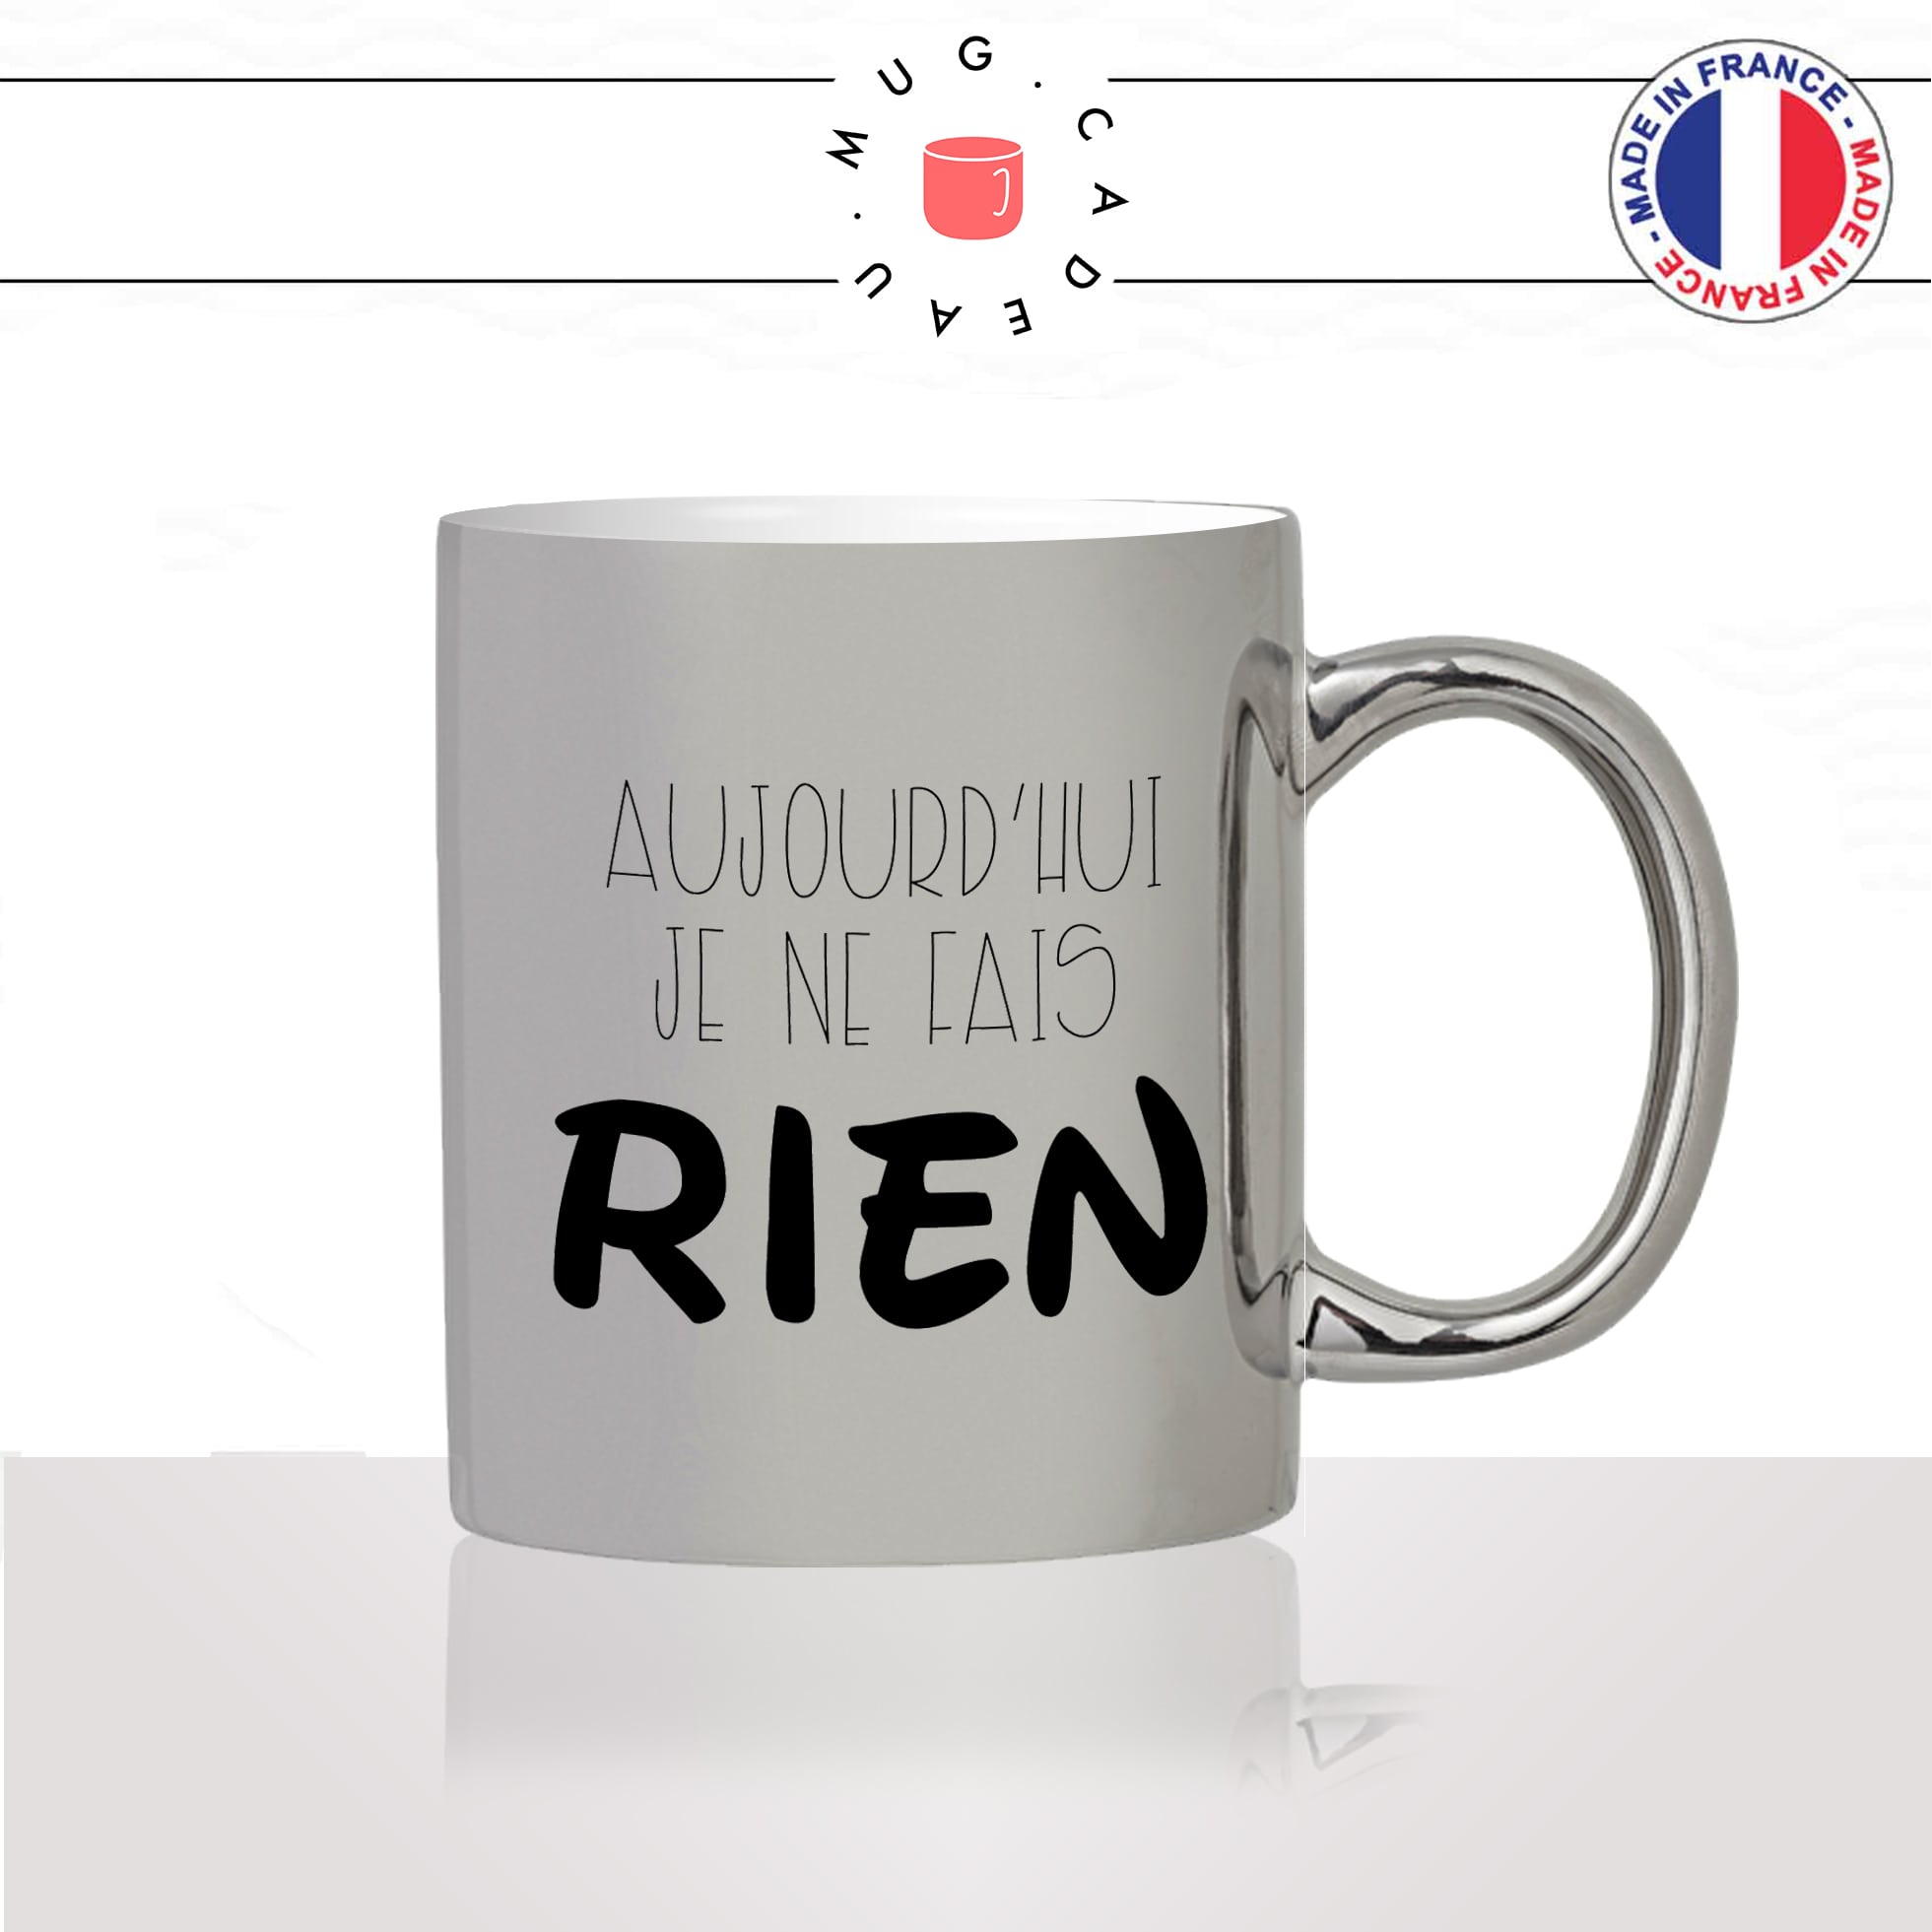 mug-tasse-argent-argenté-silver-aujourdhui-je-ne-fais-rien-flemme-week-end-motivation-humour-idée-cadeau-fun-cool-café-thé-original2-min